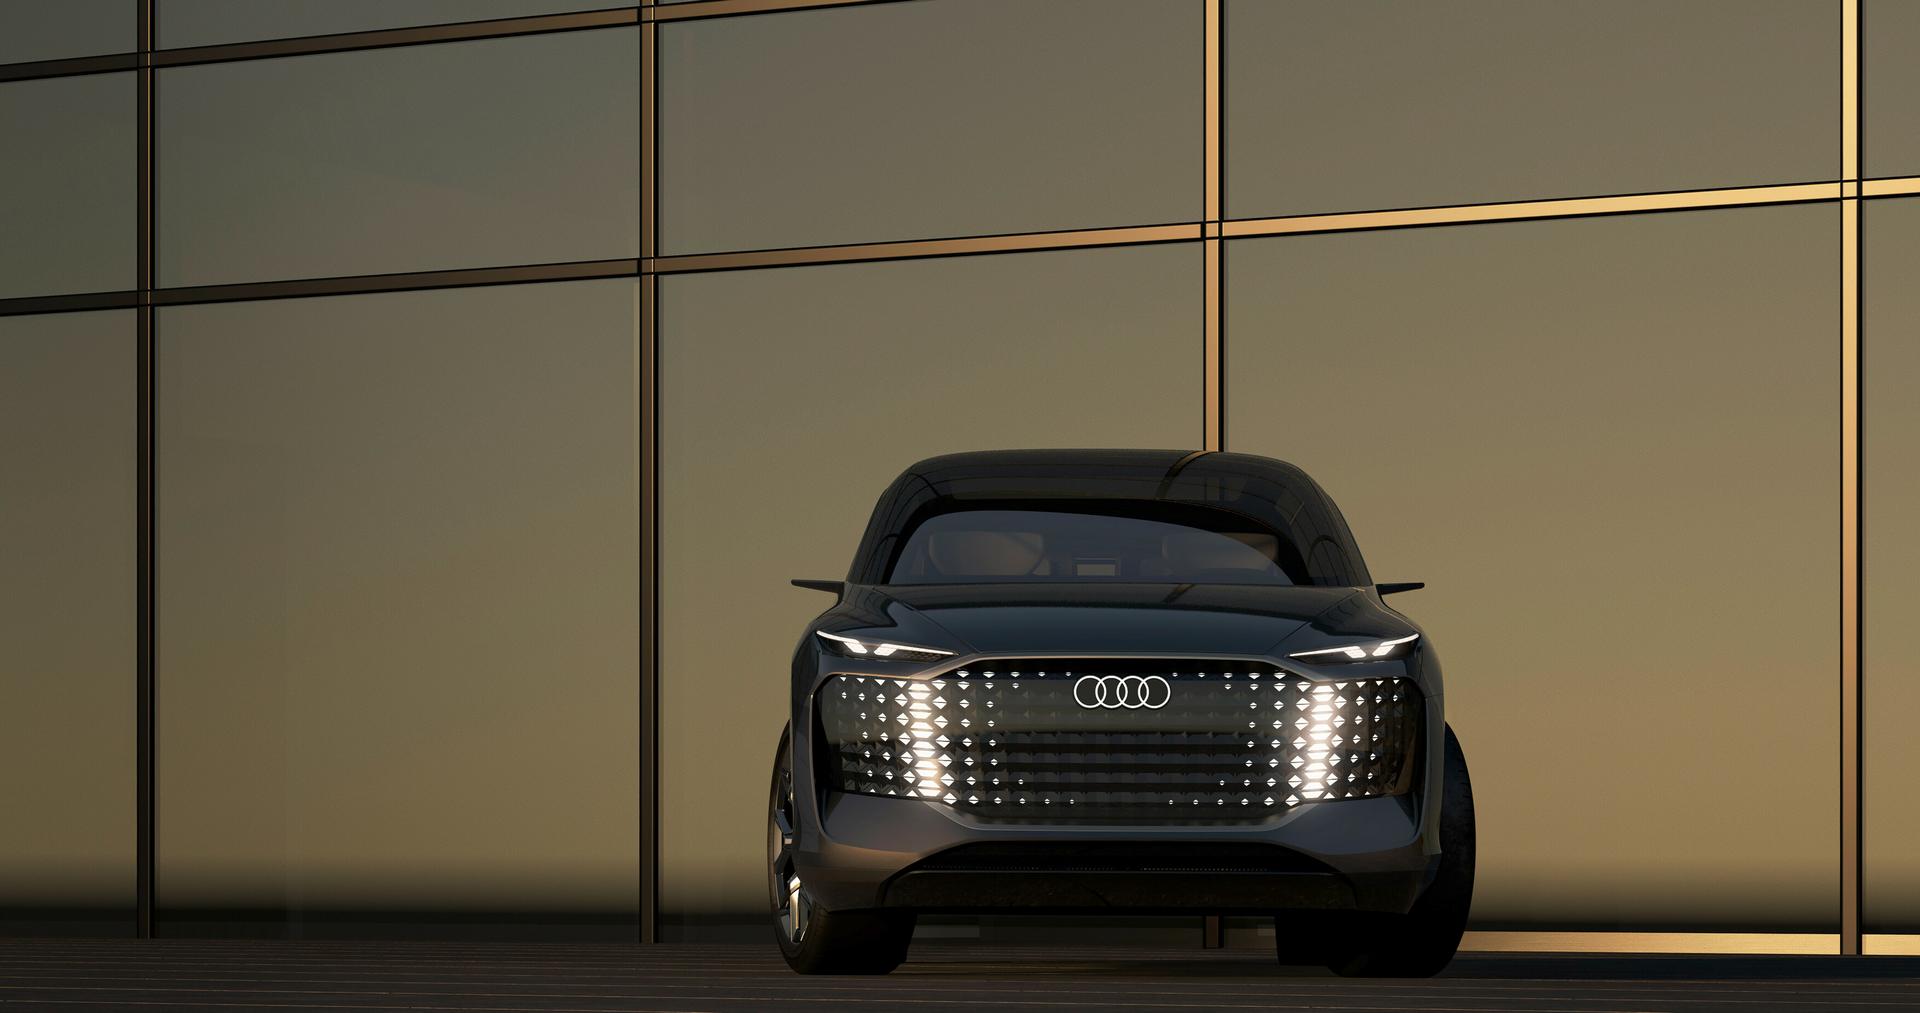 Audi urbansphere concept specs